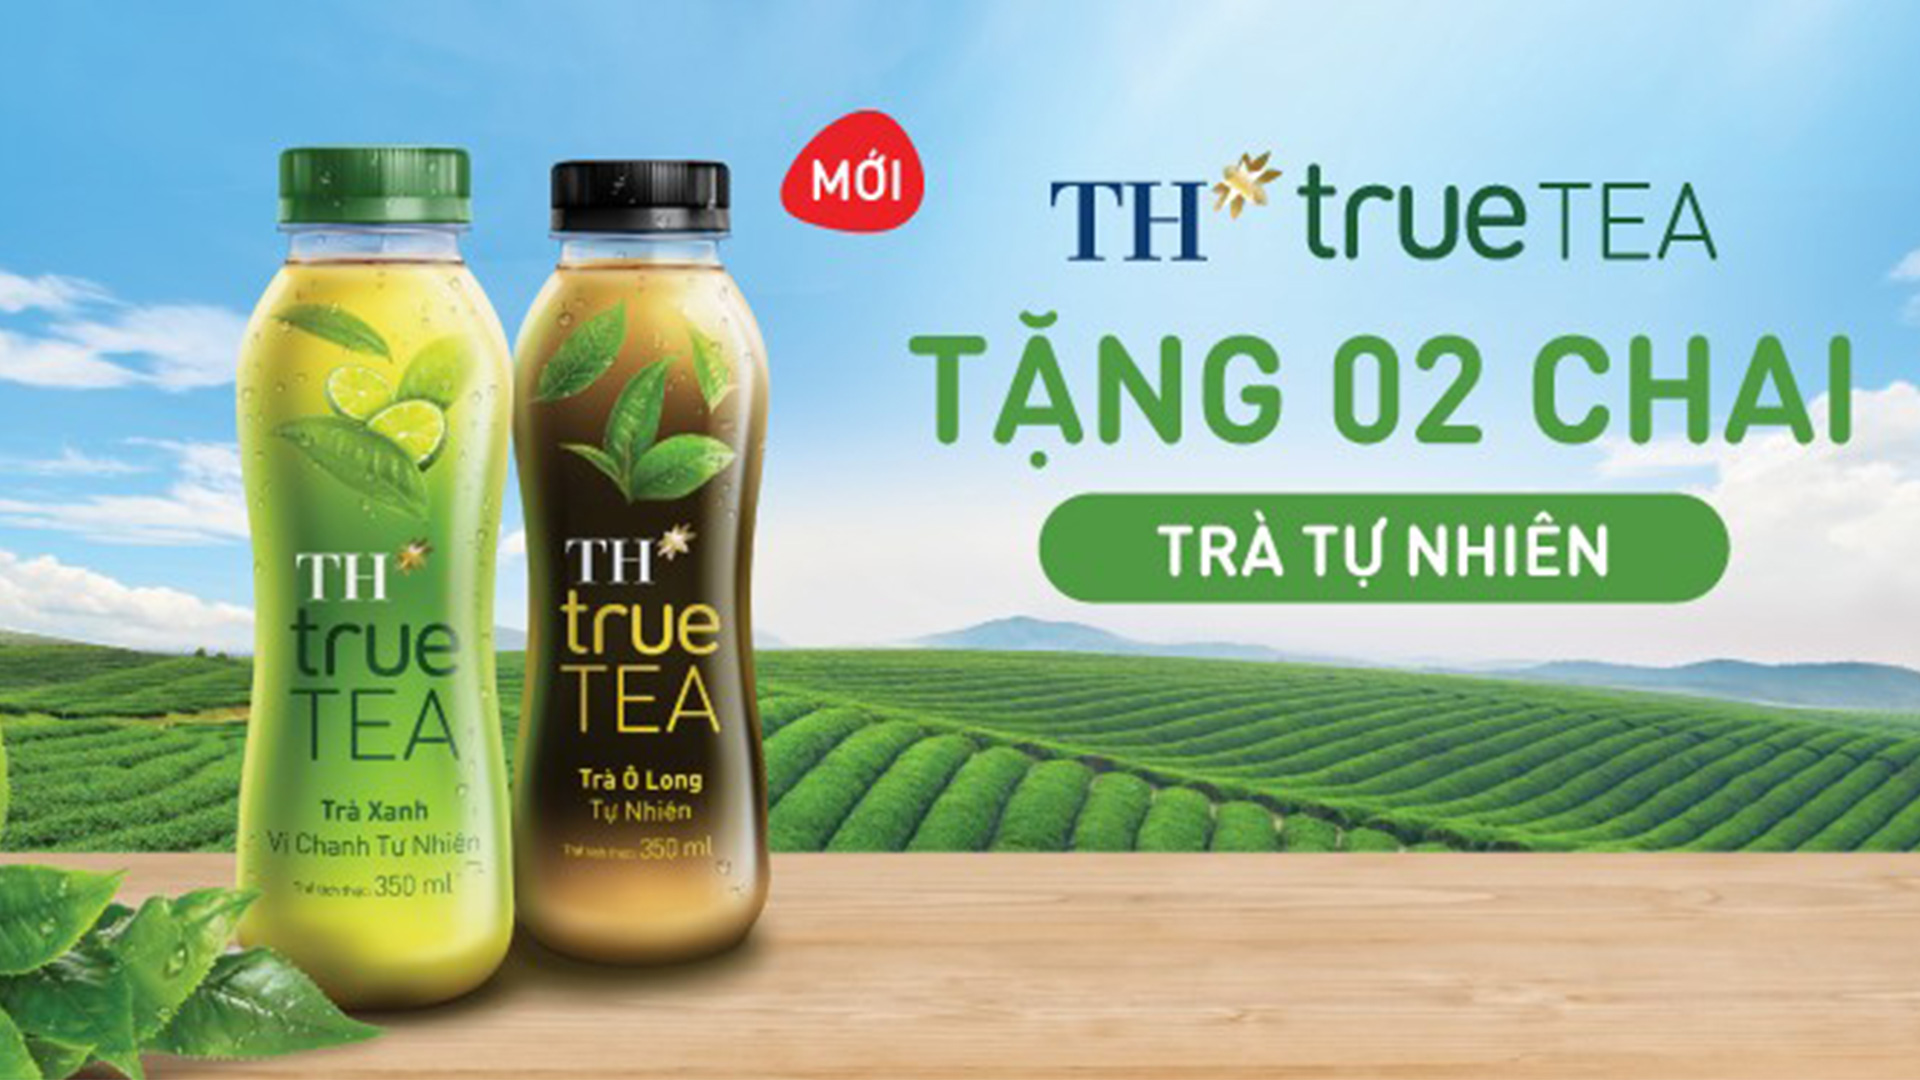 [Hà Nội] Tặng 2 chai trà tự nhiên TH true TEA